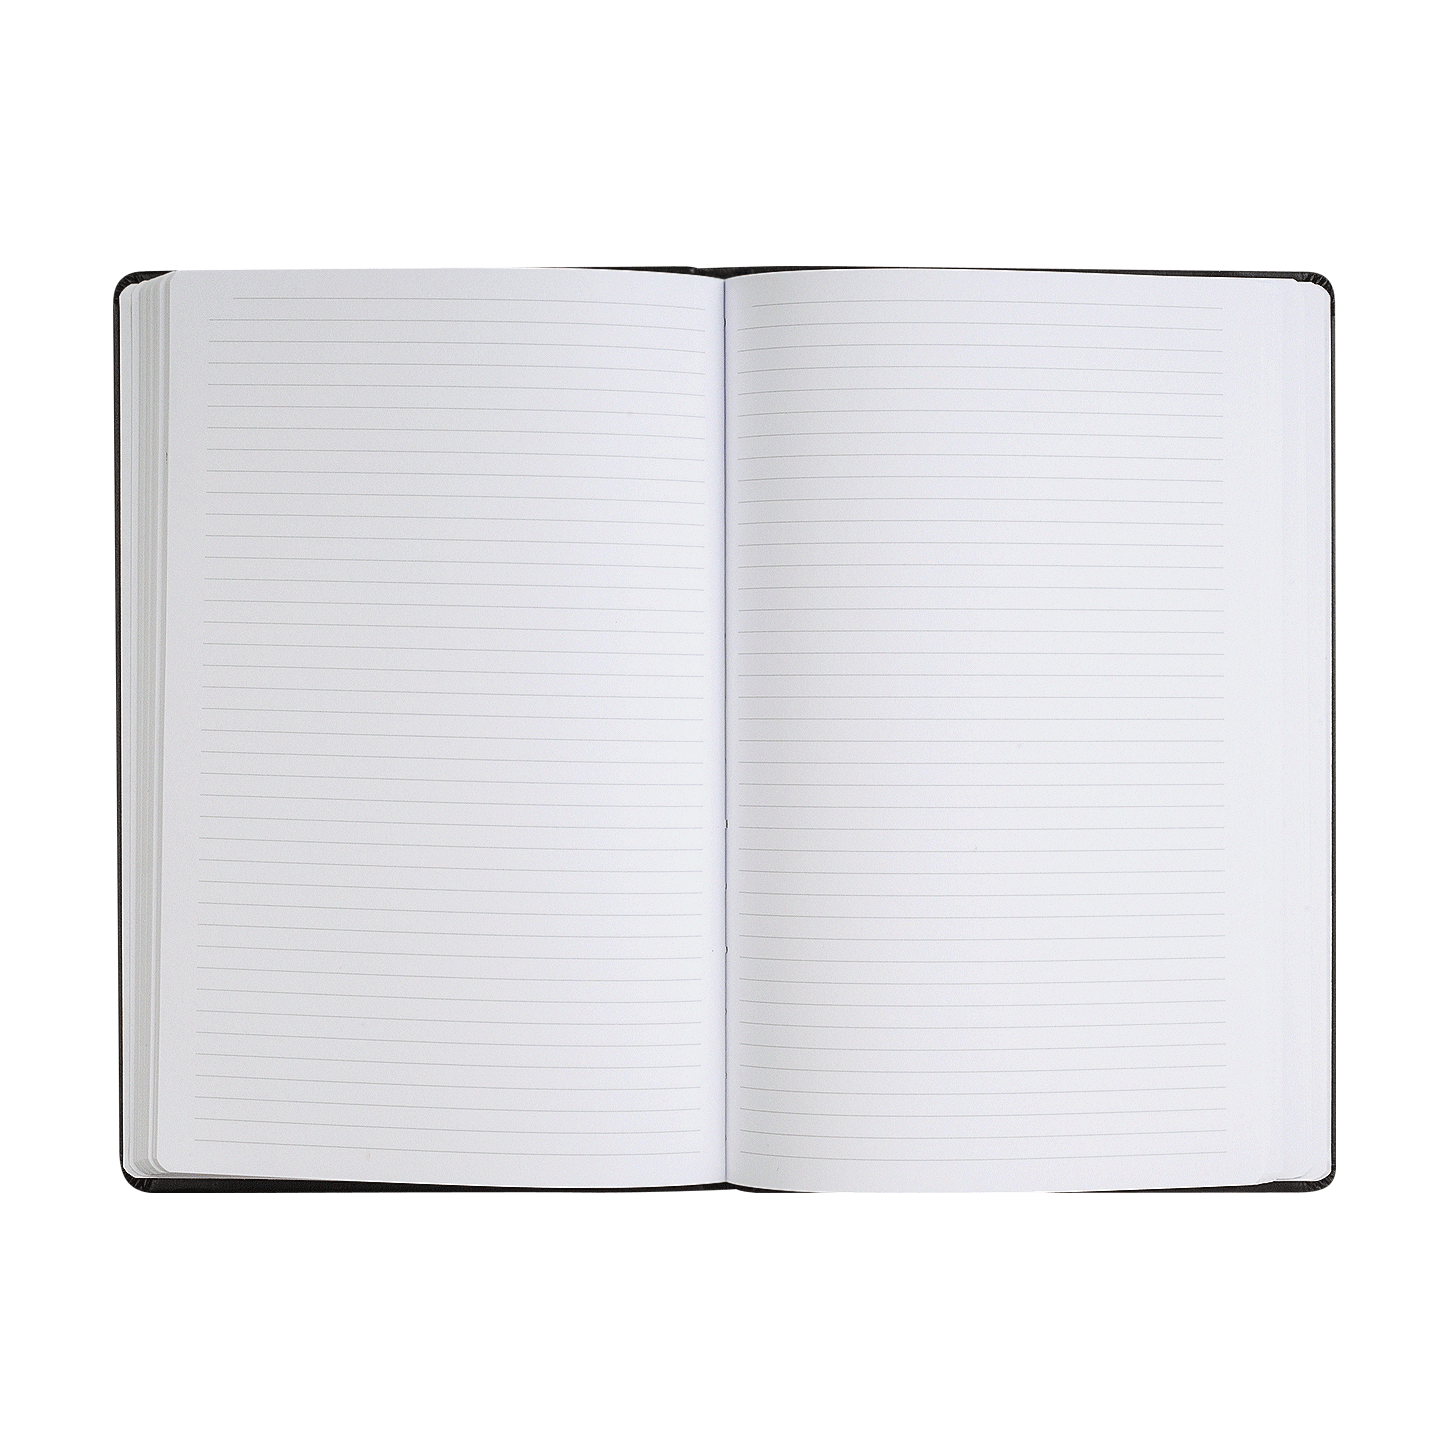  Carnet de notes: Format 10x15 cm, 48 pages, petits carreaux,  6x6 (French Edition): 9798669887513: JulietteCarnet: Books